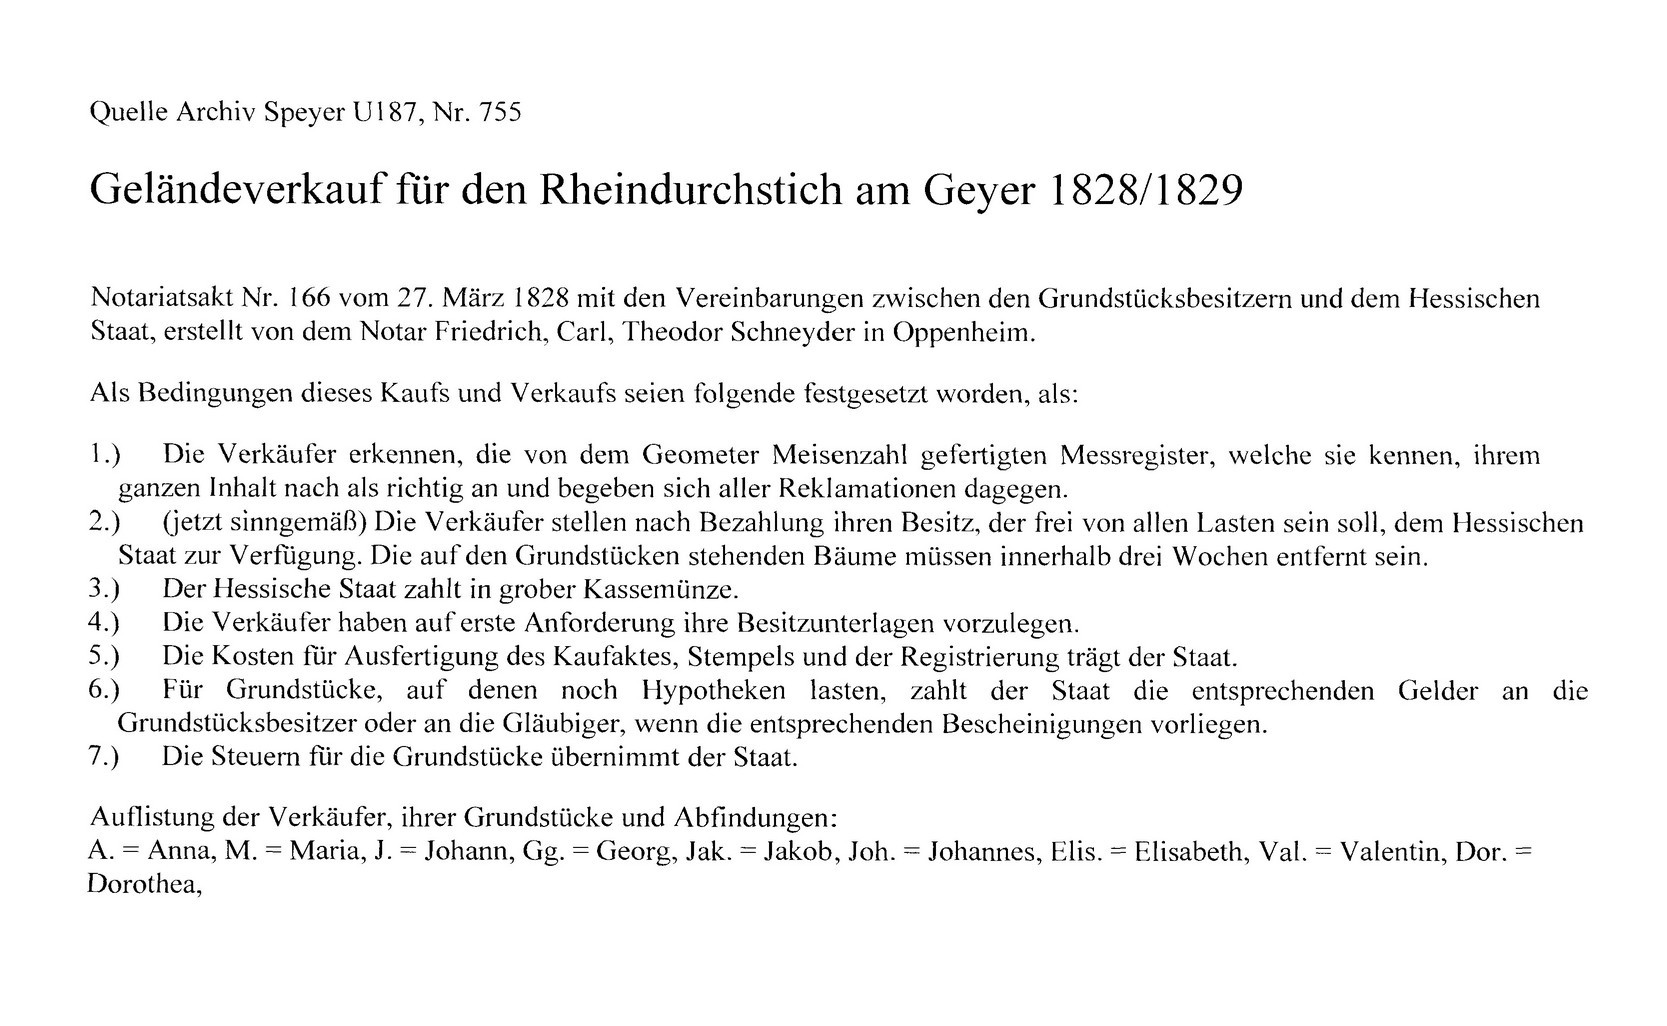 Ankauf von Privatgrundstücken zur Durchführung des Rheindurchstichs (Kulturverein Guntersblum CC BY-NC-SA)